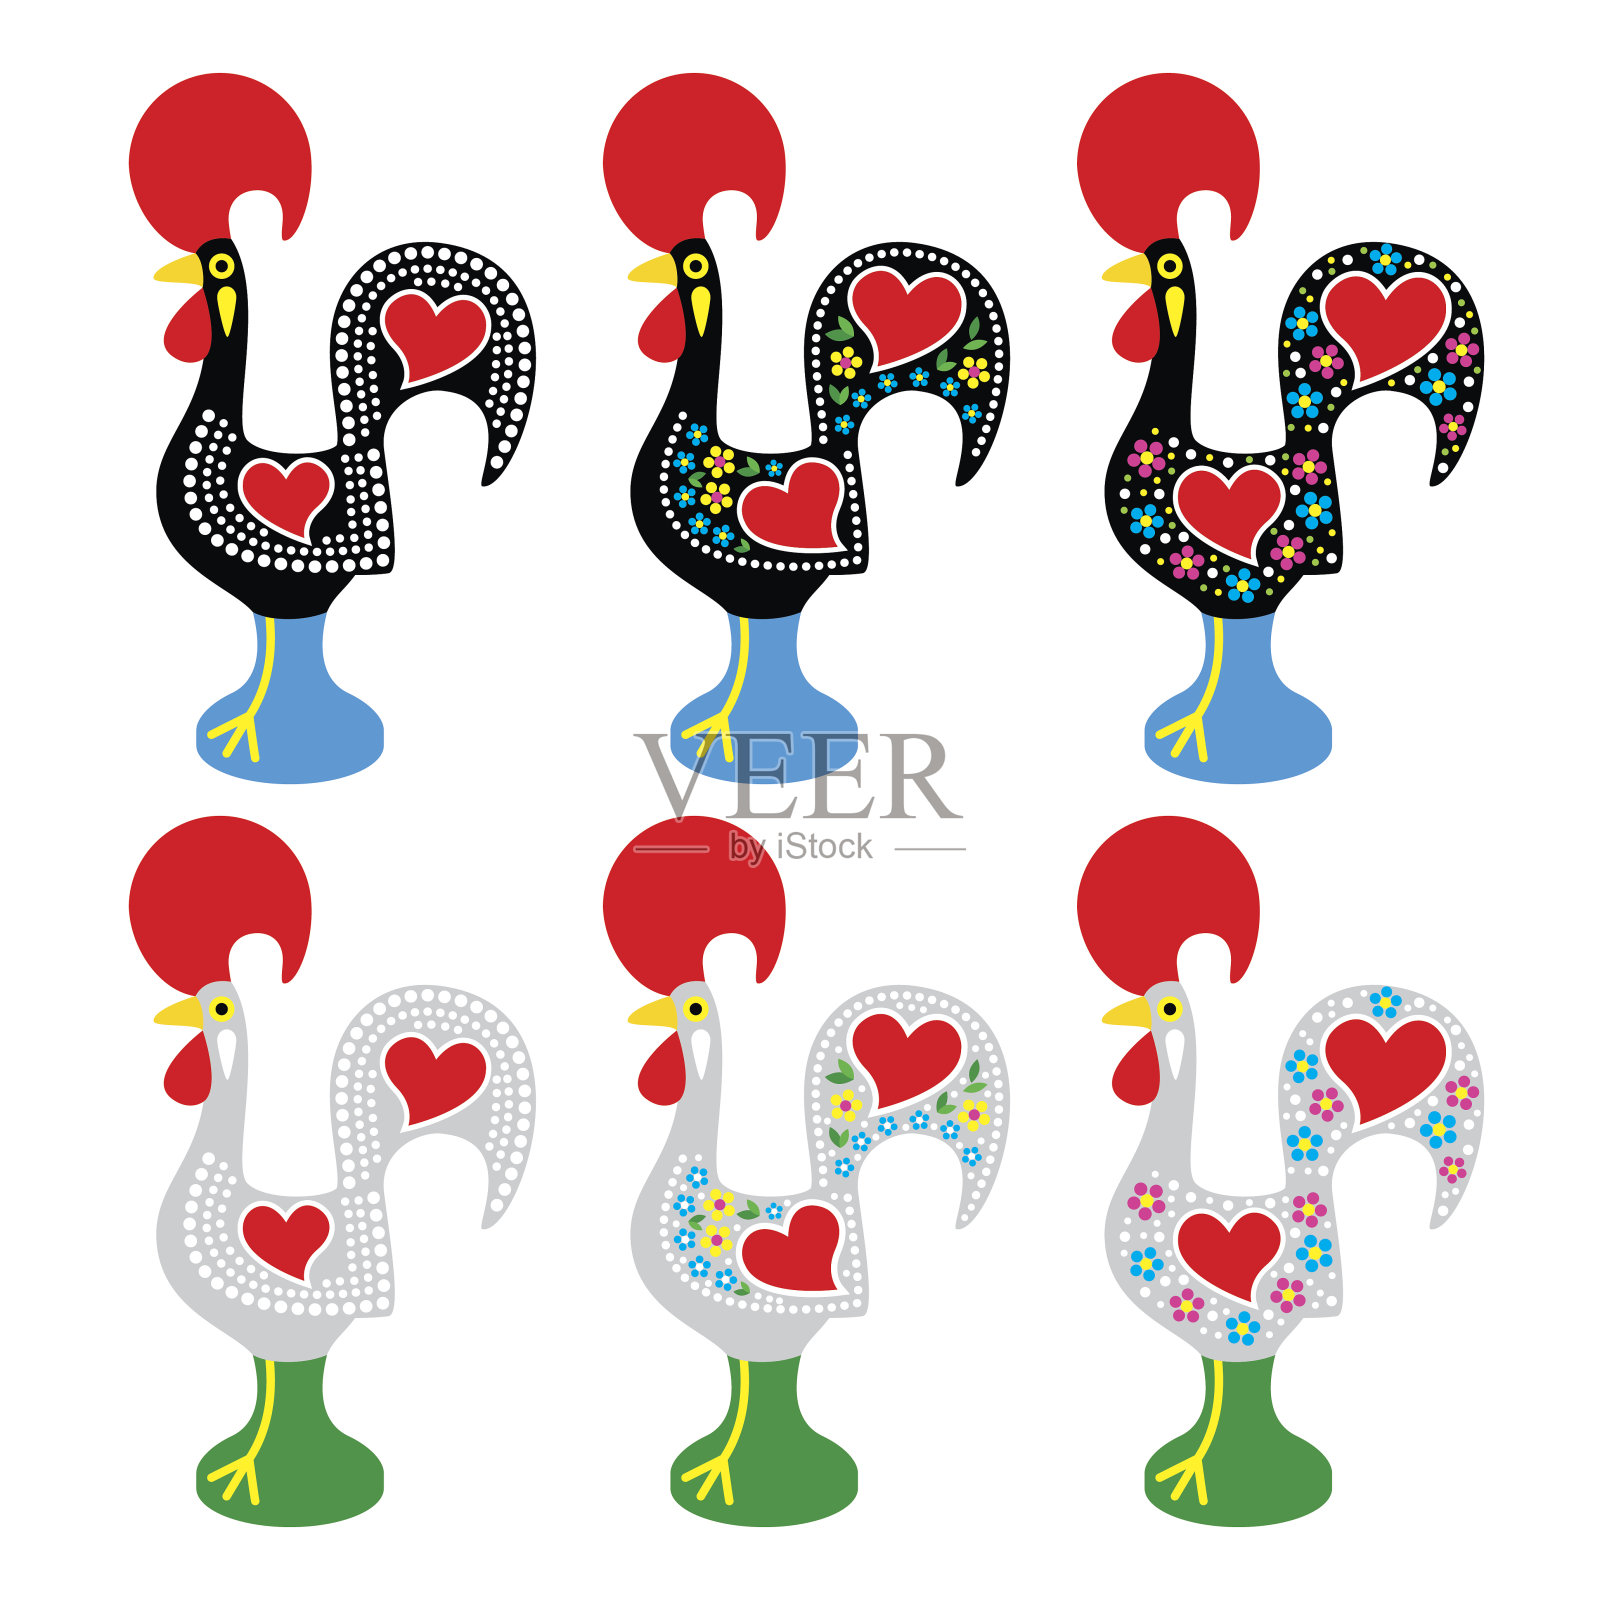 葡萄牙公鸡或巴塞洛斯 - 加洛德巴塞洛斯图标插画图片素材